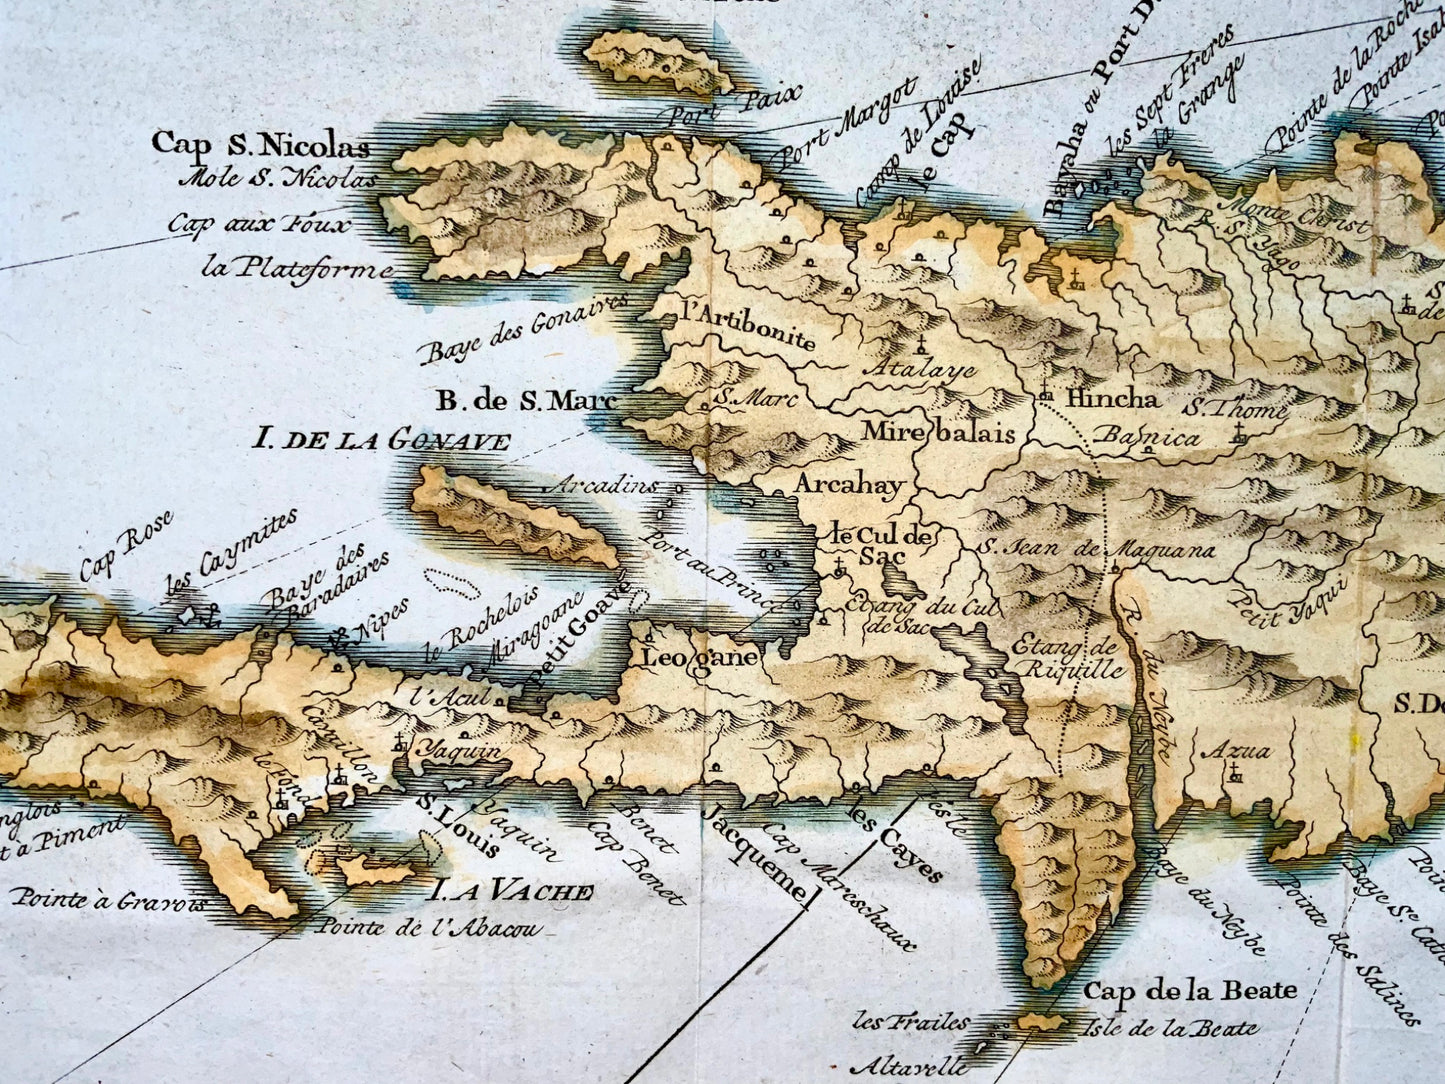 1775 A. van Krevelt; Carte de l' Isle de Saint Domingue, Hispaniola - Map